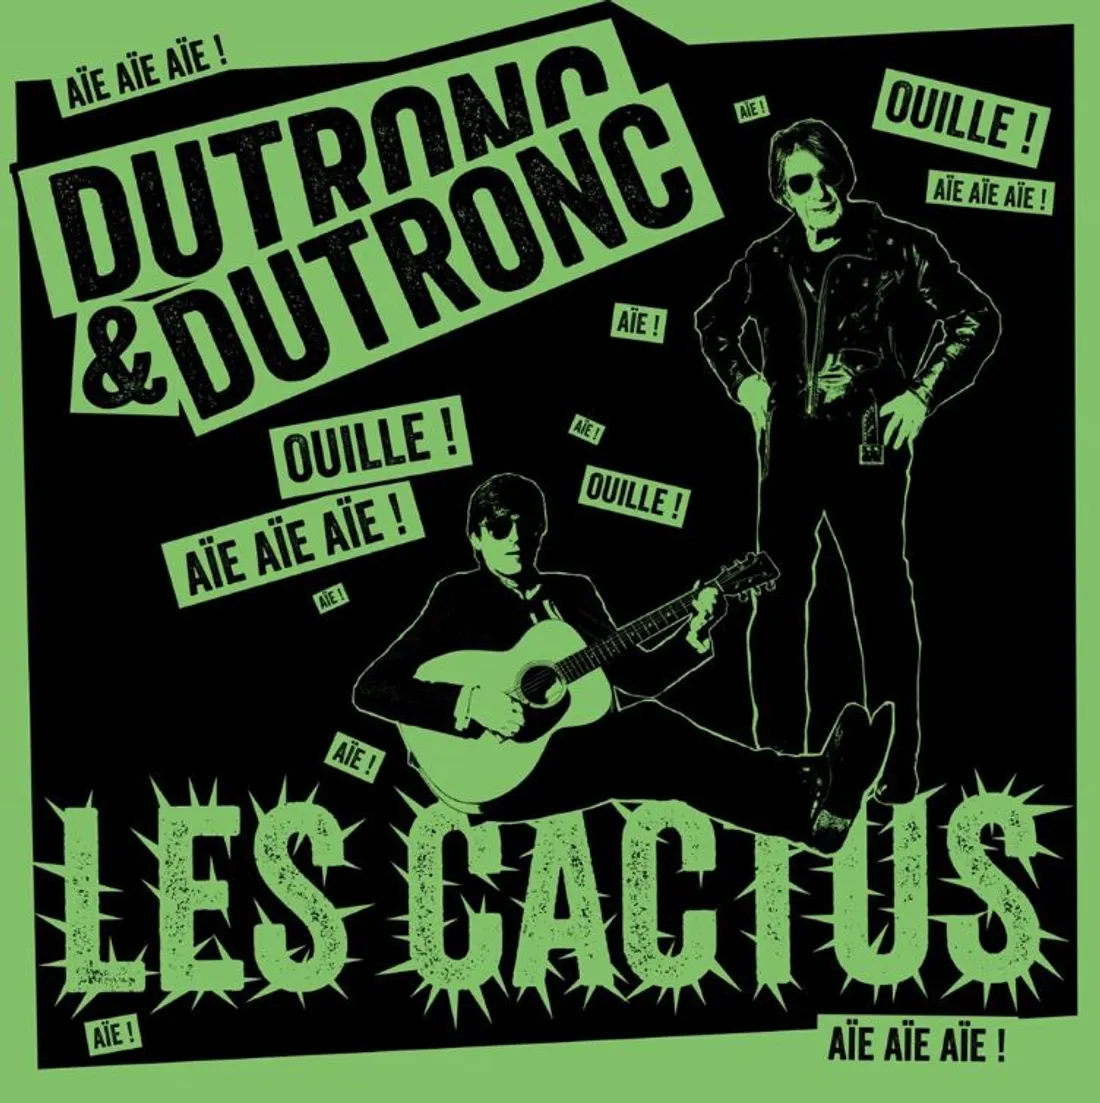 La pochette "Les cactus" de Dutronc & Dutronc